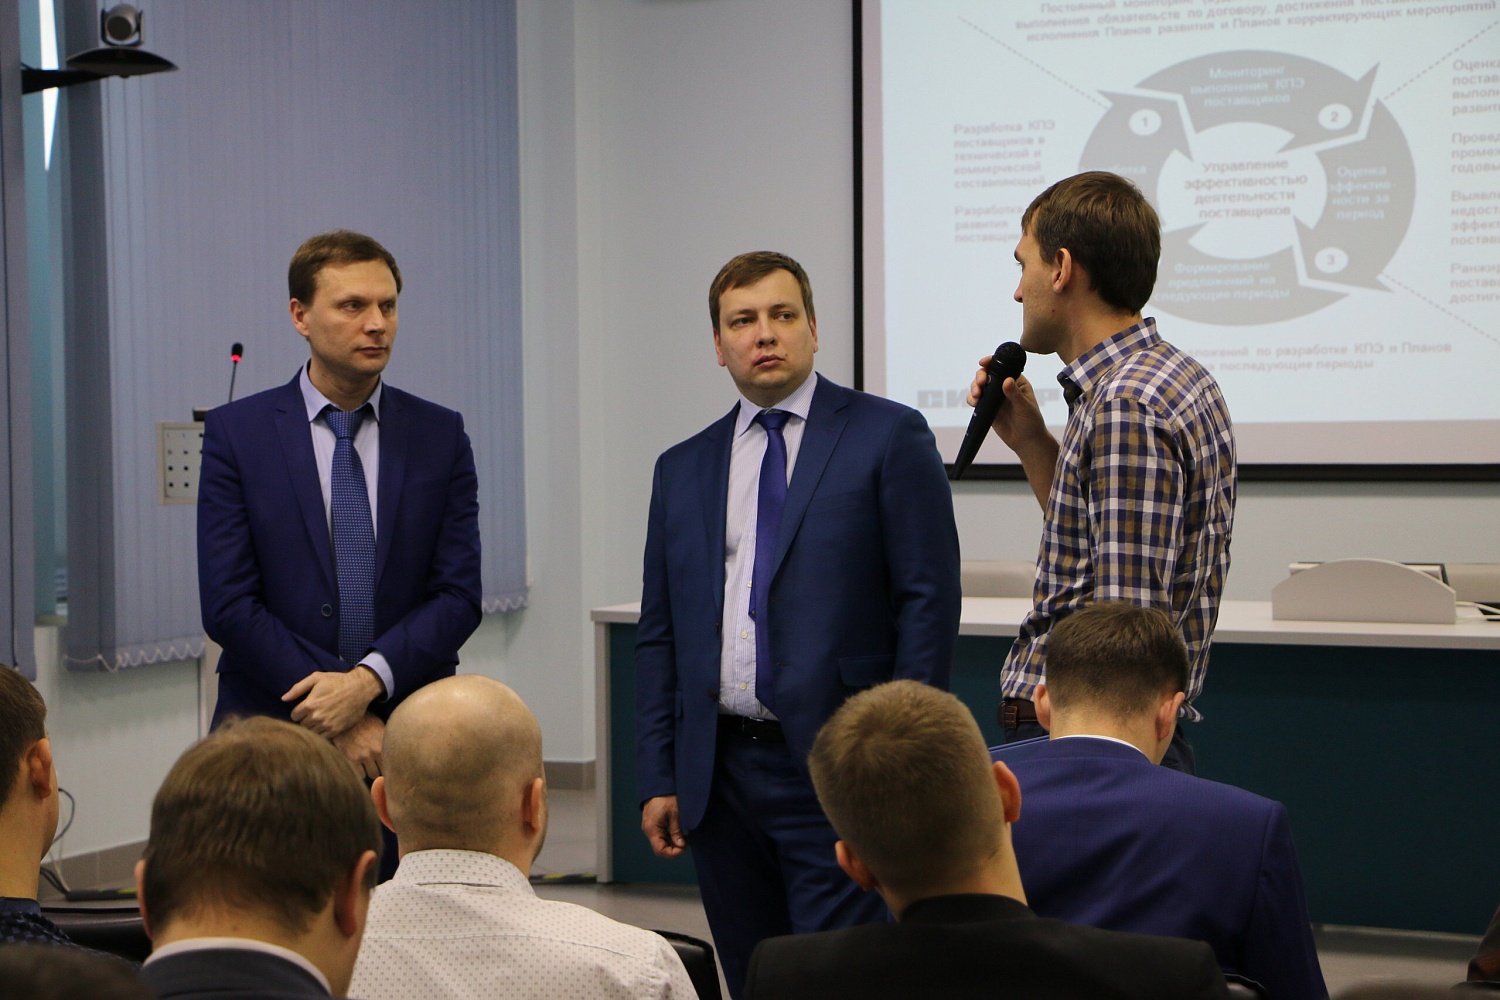 Компания ИНГК приняла участие в презентации возможностей и политики закупок пермской площадки предприятия СИБУР.